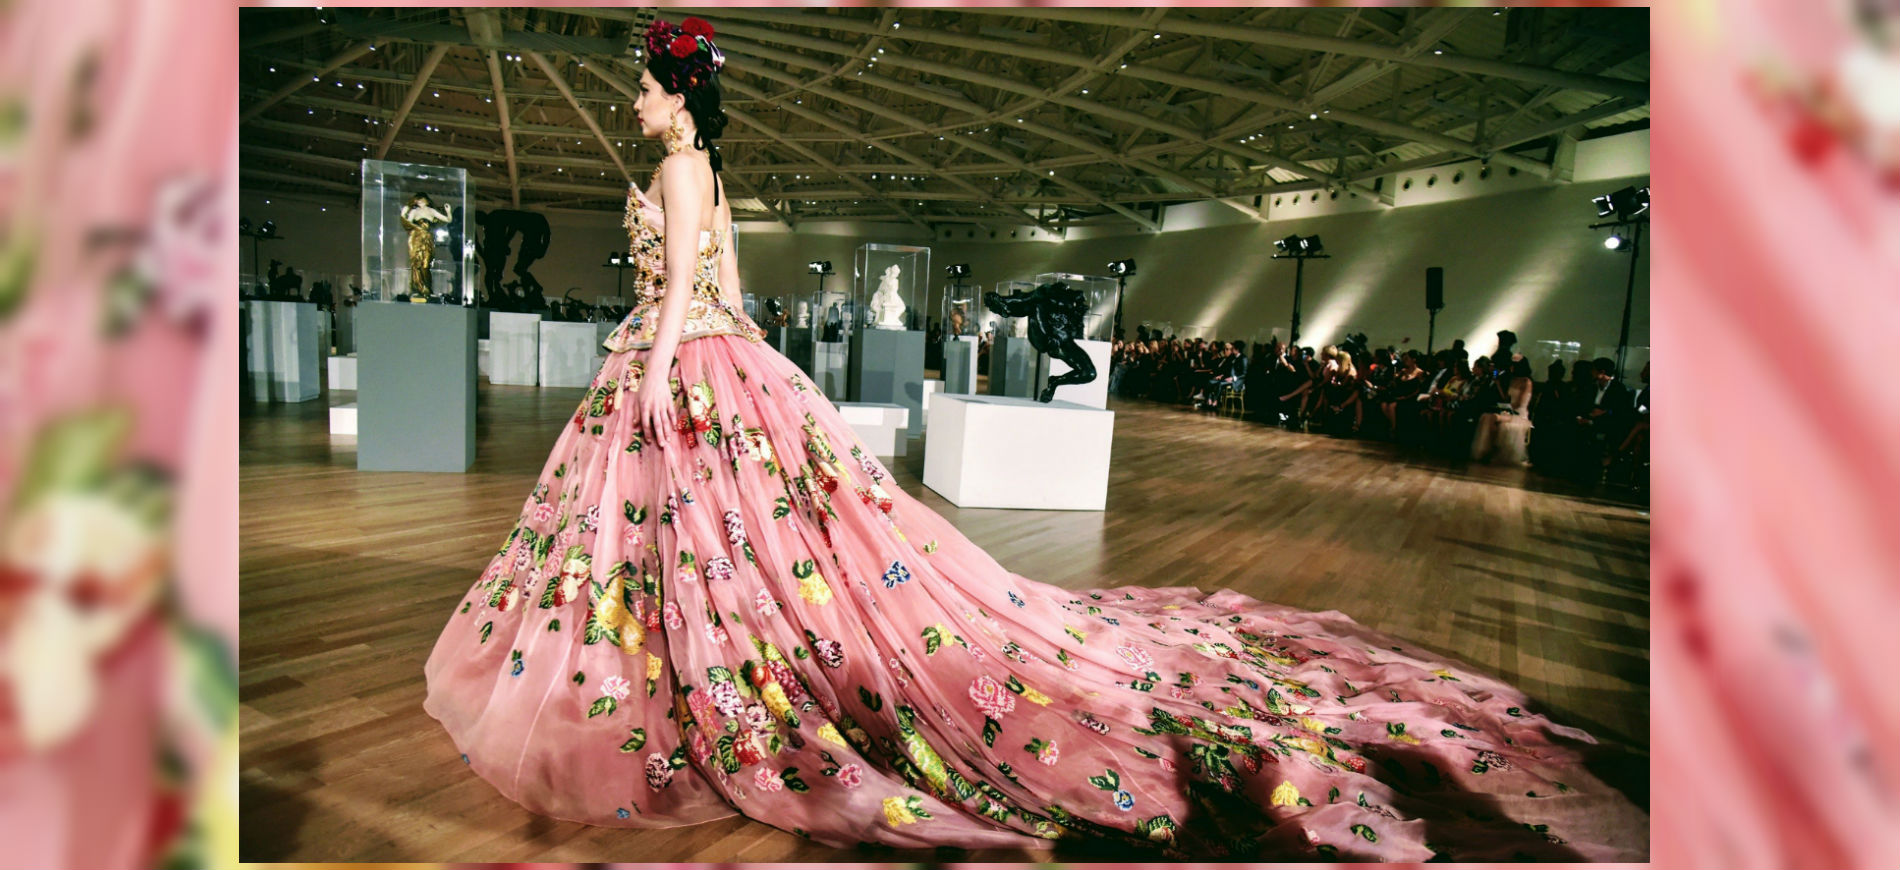 Dolce&Gabbana Alta Moda e Alta Sartorialità. Credits Luke Leitch: modella con abito lungo e vaporoso a fiori